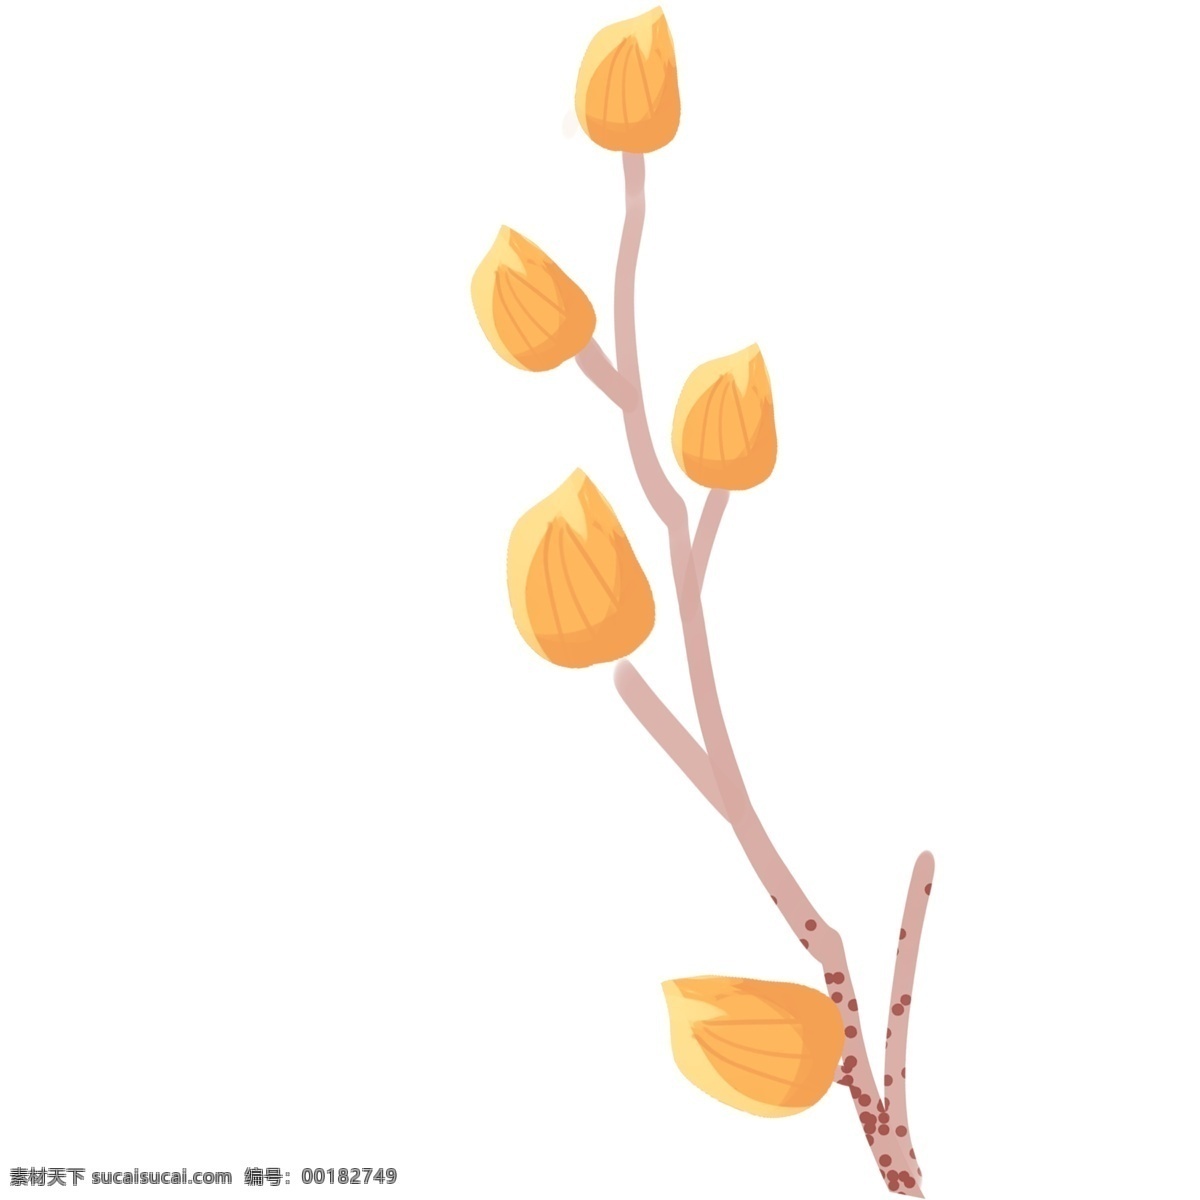 黄色 装饰 树枝 插画 花朵 植物 树 卡通 彩色 水彩 小清新 创意 图案 手绘风